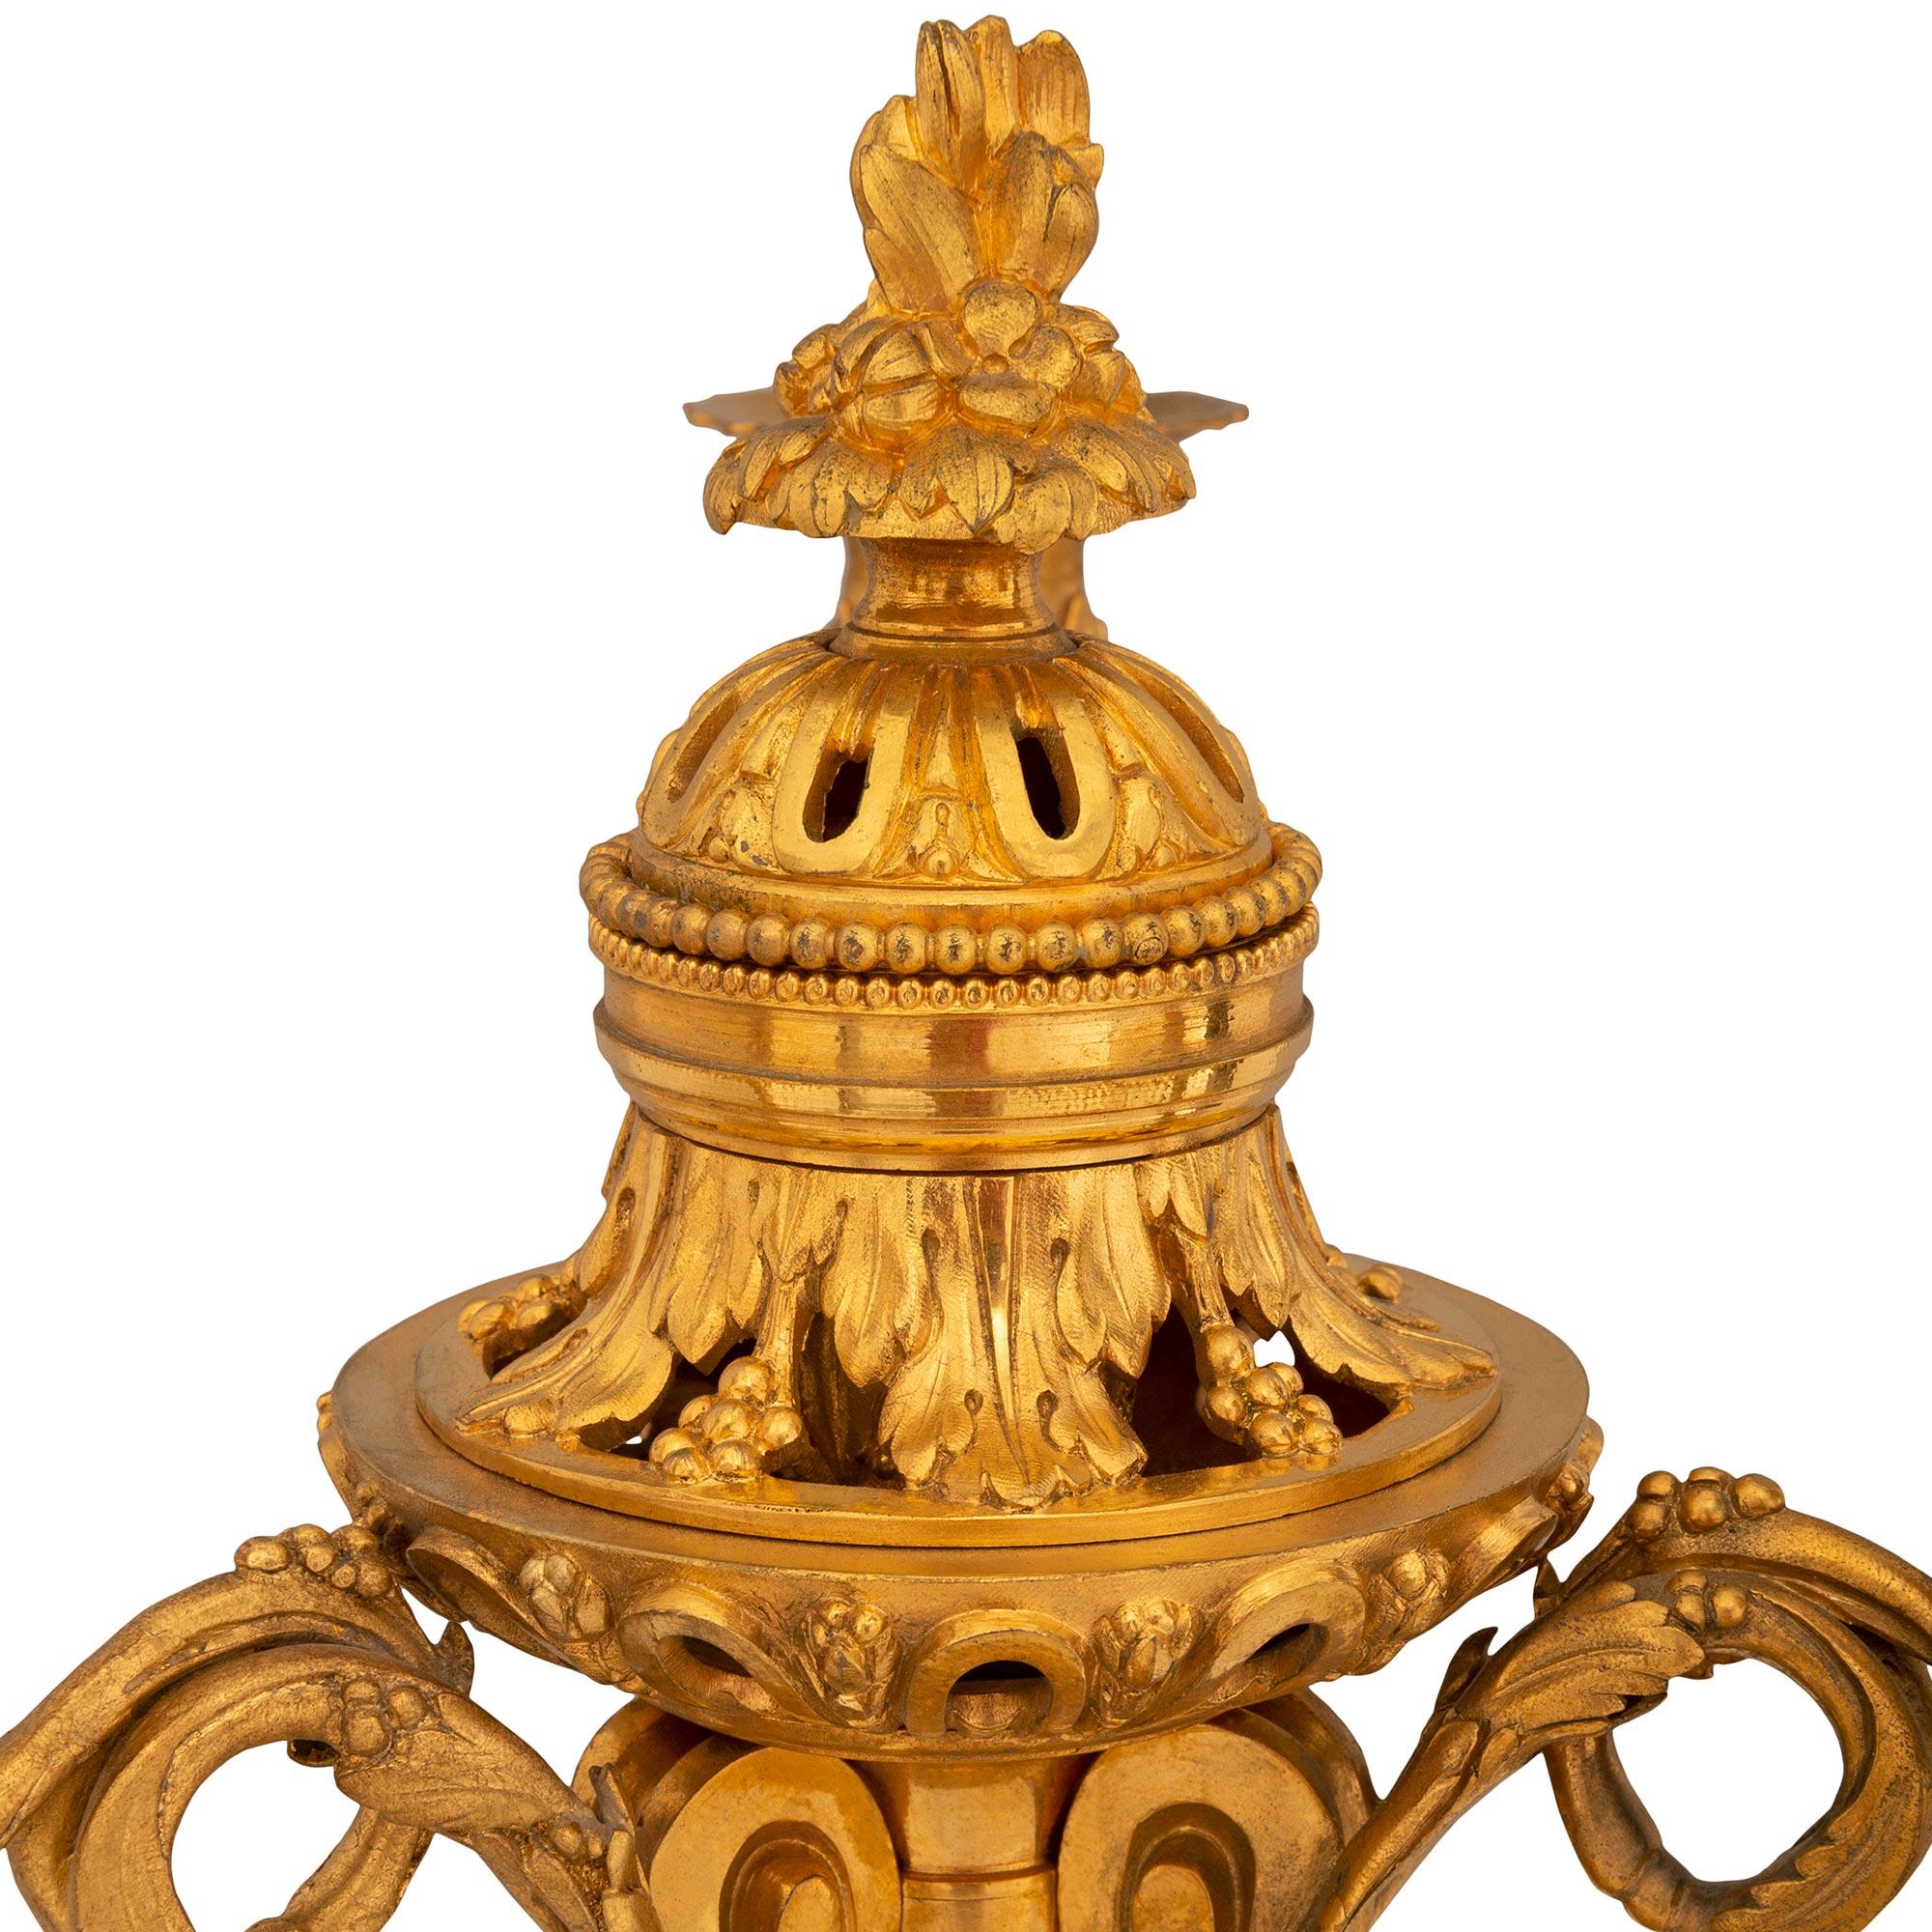 Une belle paire de candélabres français du 19ème siècle de style Louis XVI. Chaque candélabre est monté sur un support en marbre blanc de Carrare avec une garniture perlée en bronze doré à la base. Au-dessus, la colonne cannelée est décorée de